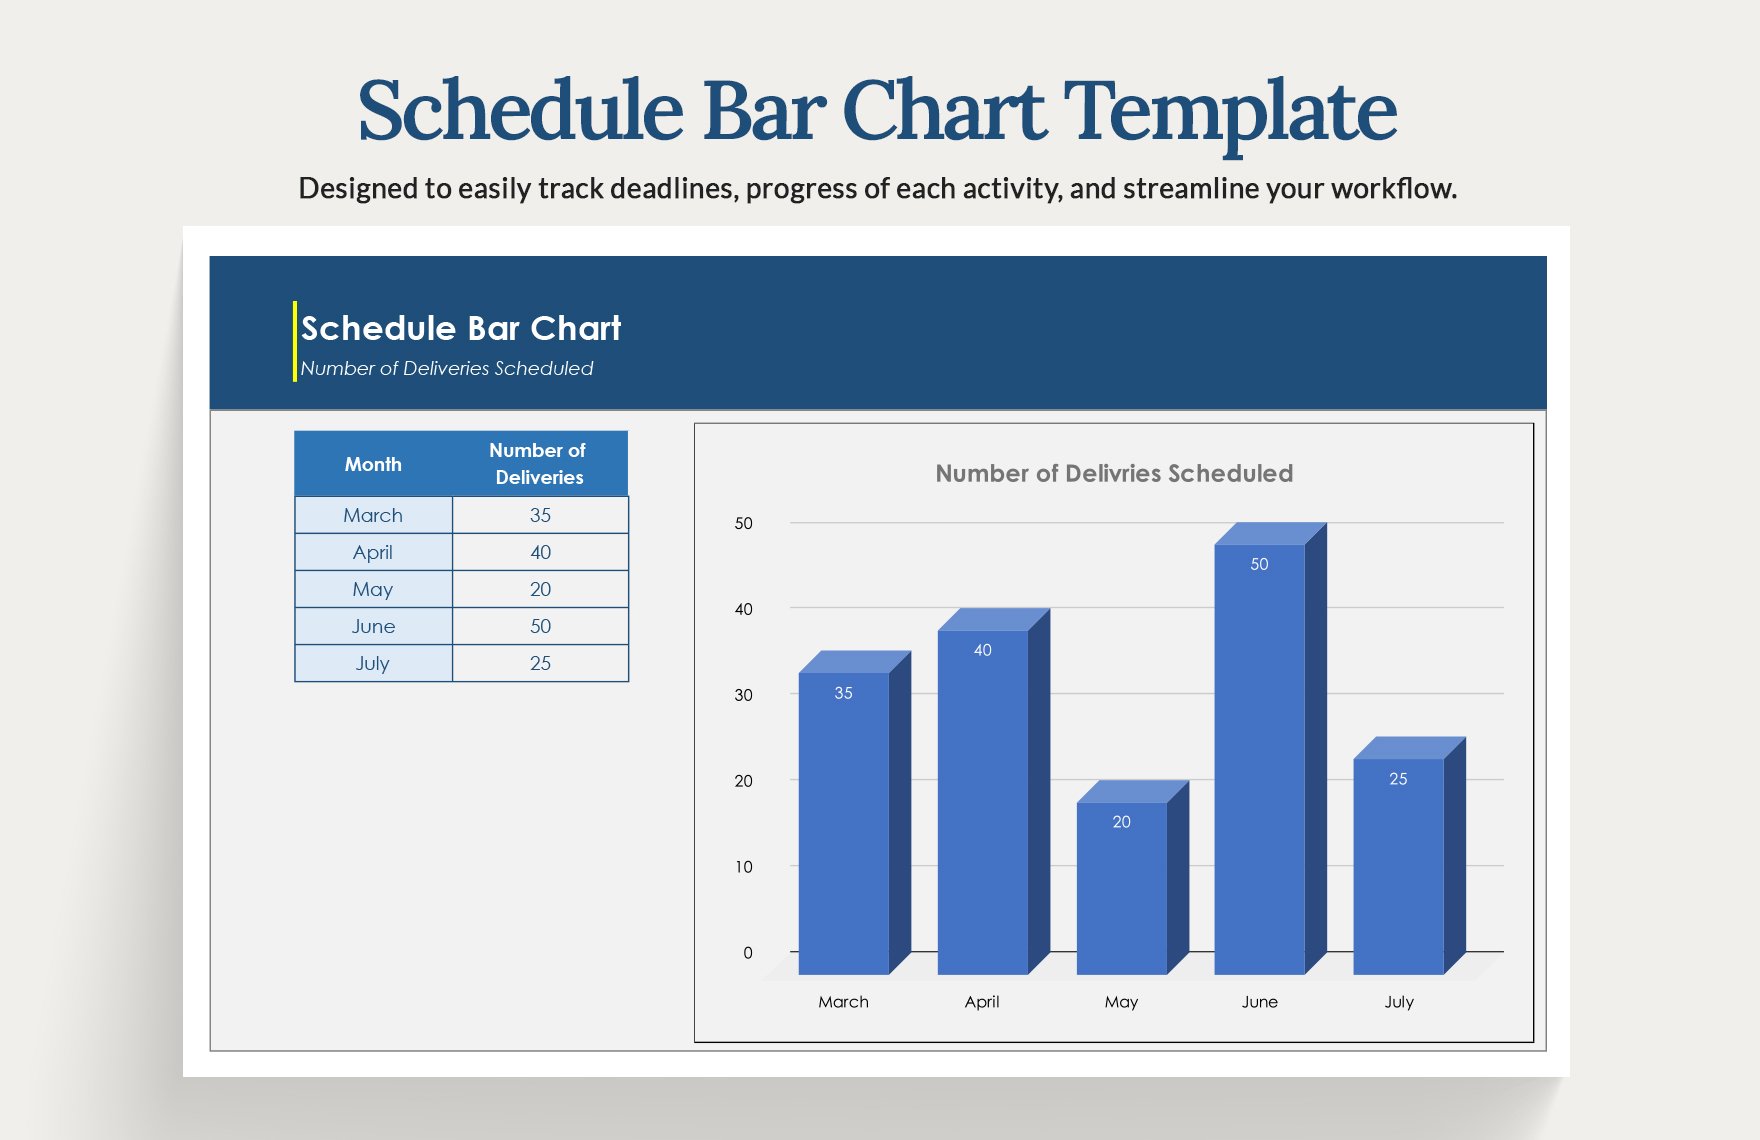 Schedule Bar Chart